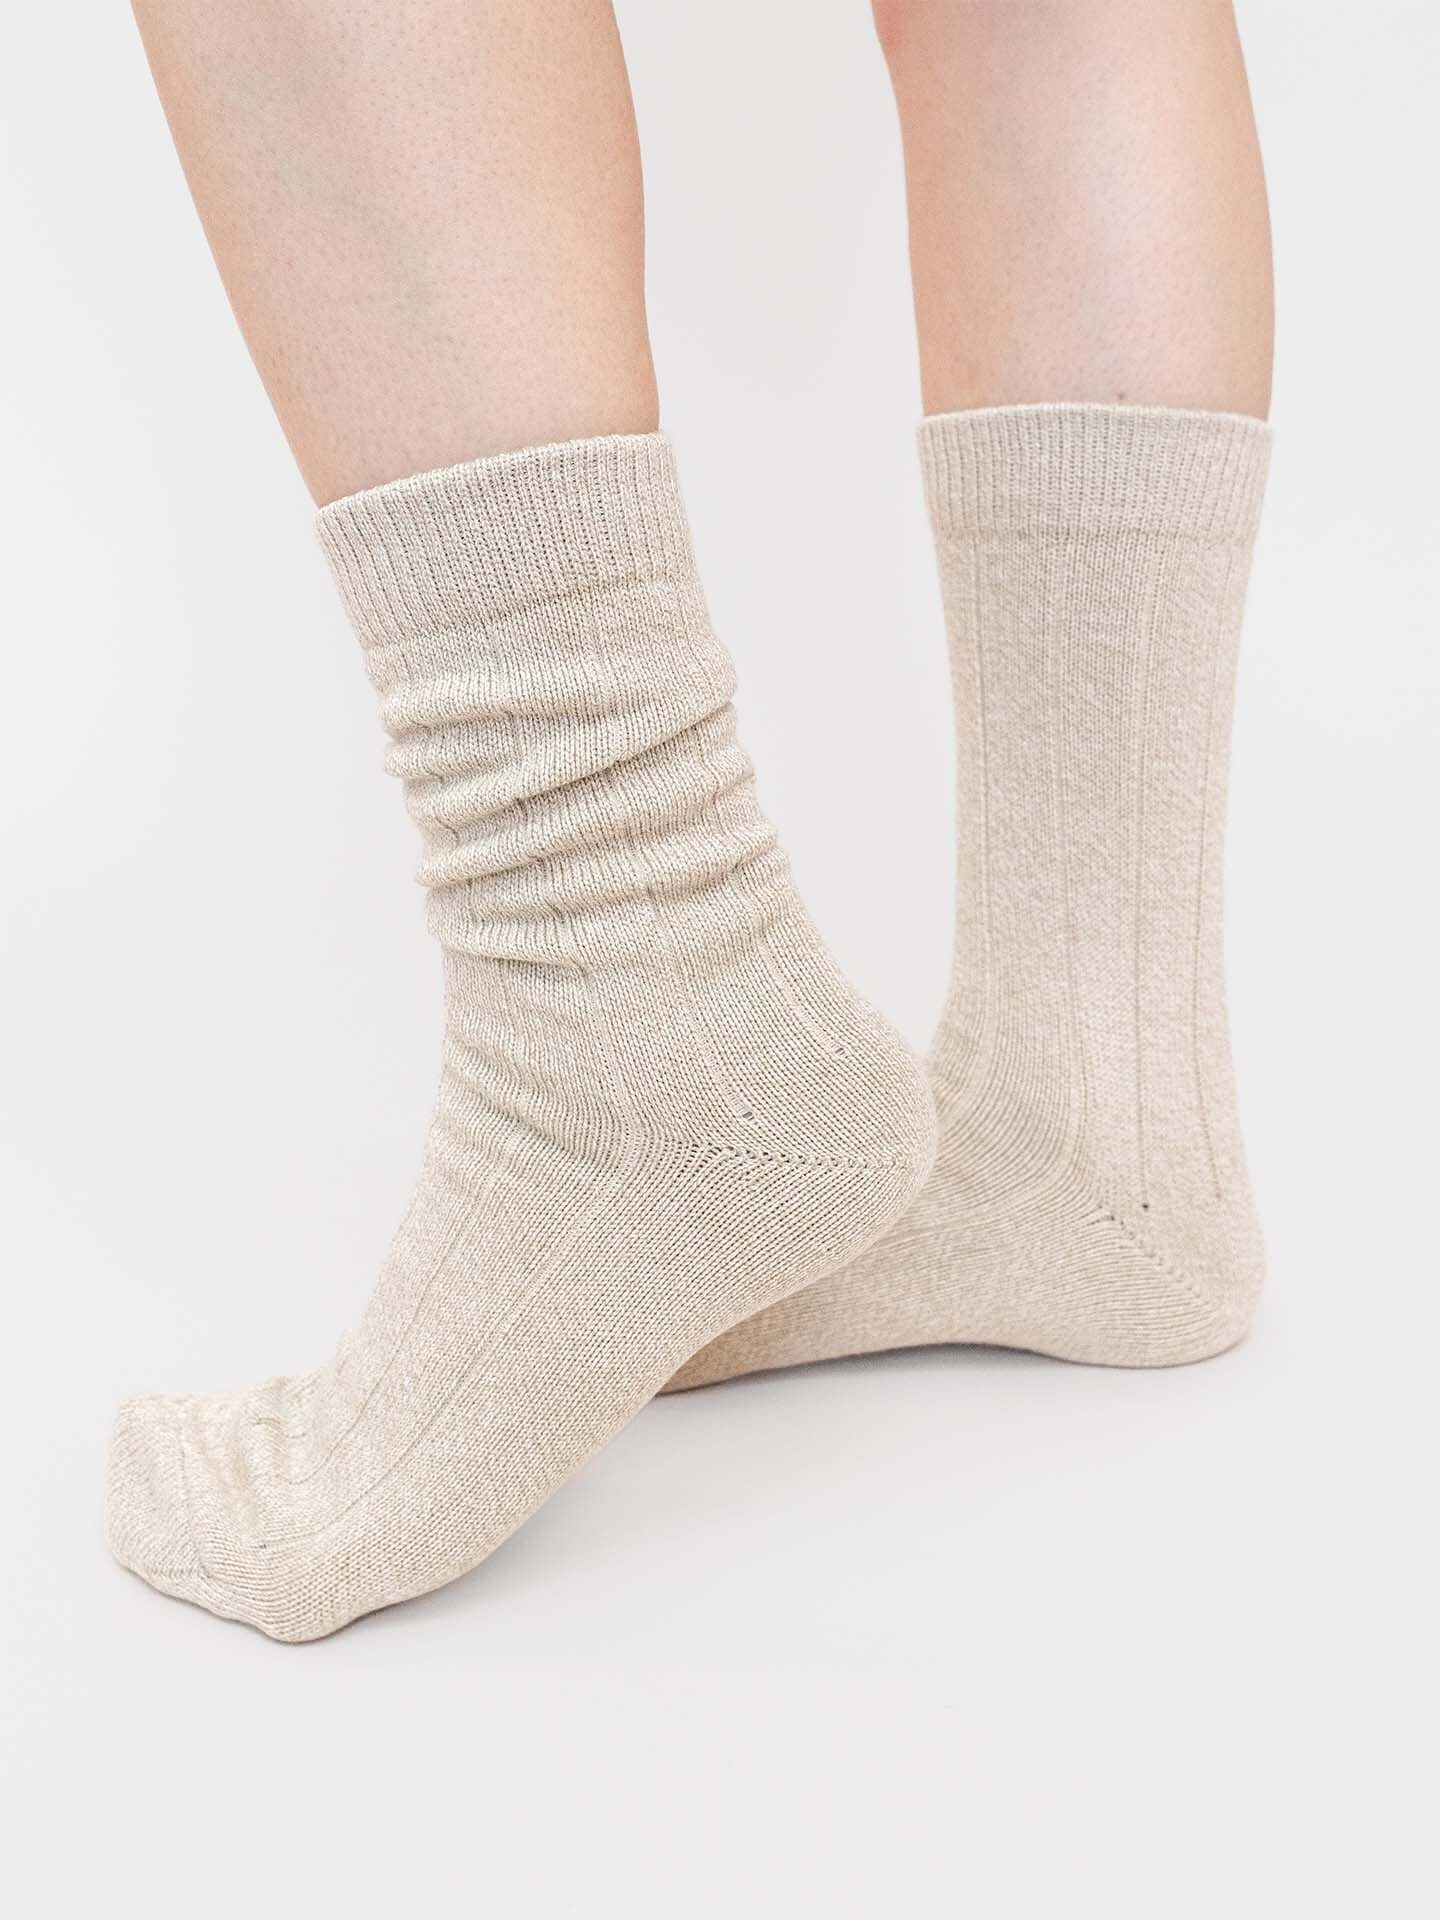 Textil Socken Erlich Astrid (2-Paar) sand